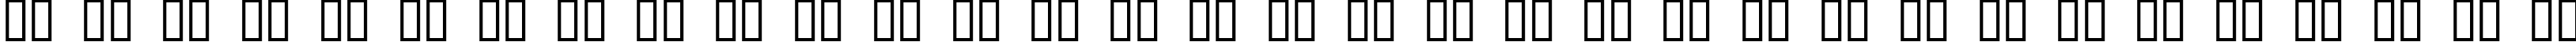 Пример написания русского алфавита шрифтом Xanadu